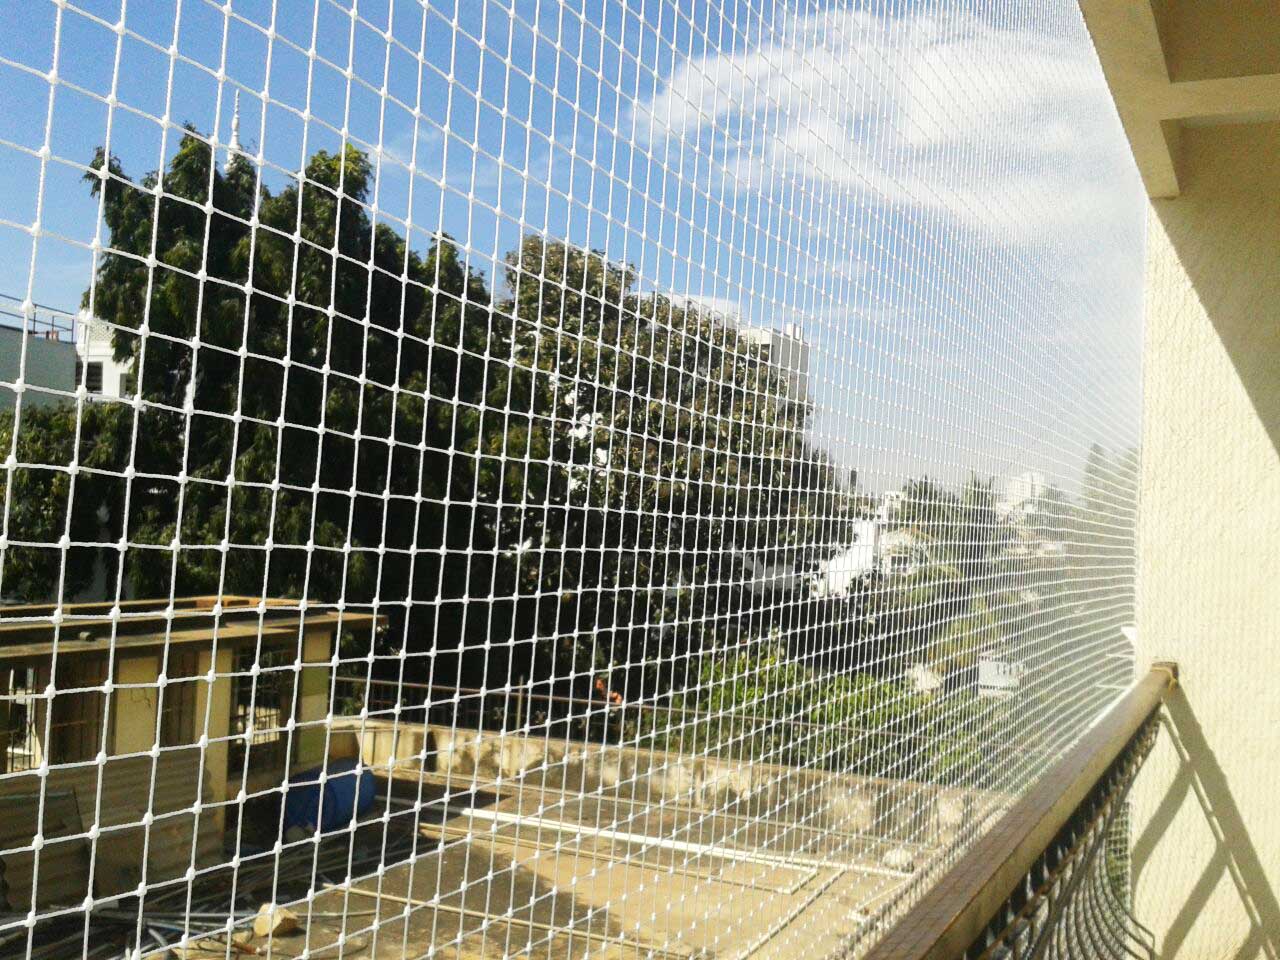 Net Garden Birds, Safety Netting Balcony